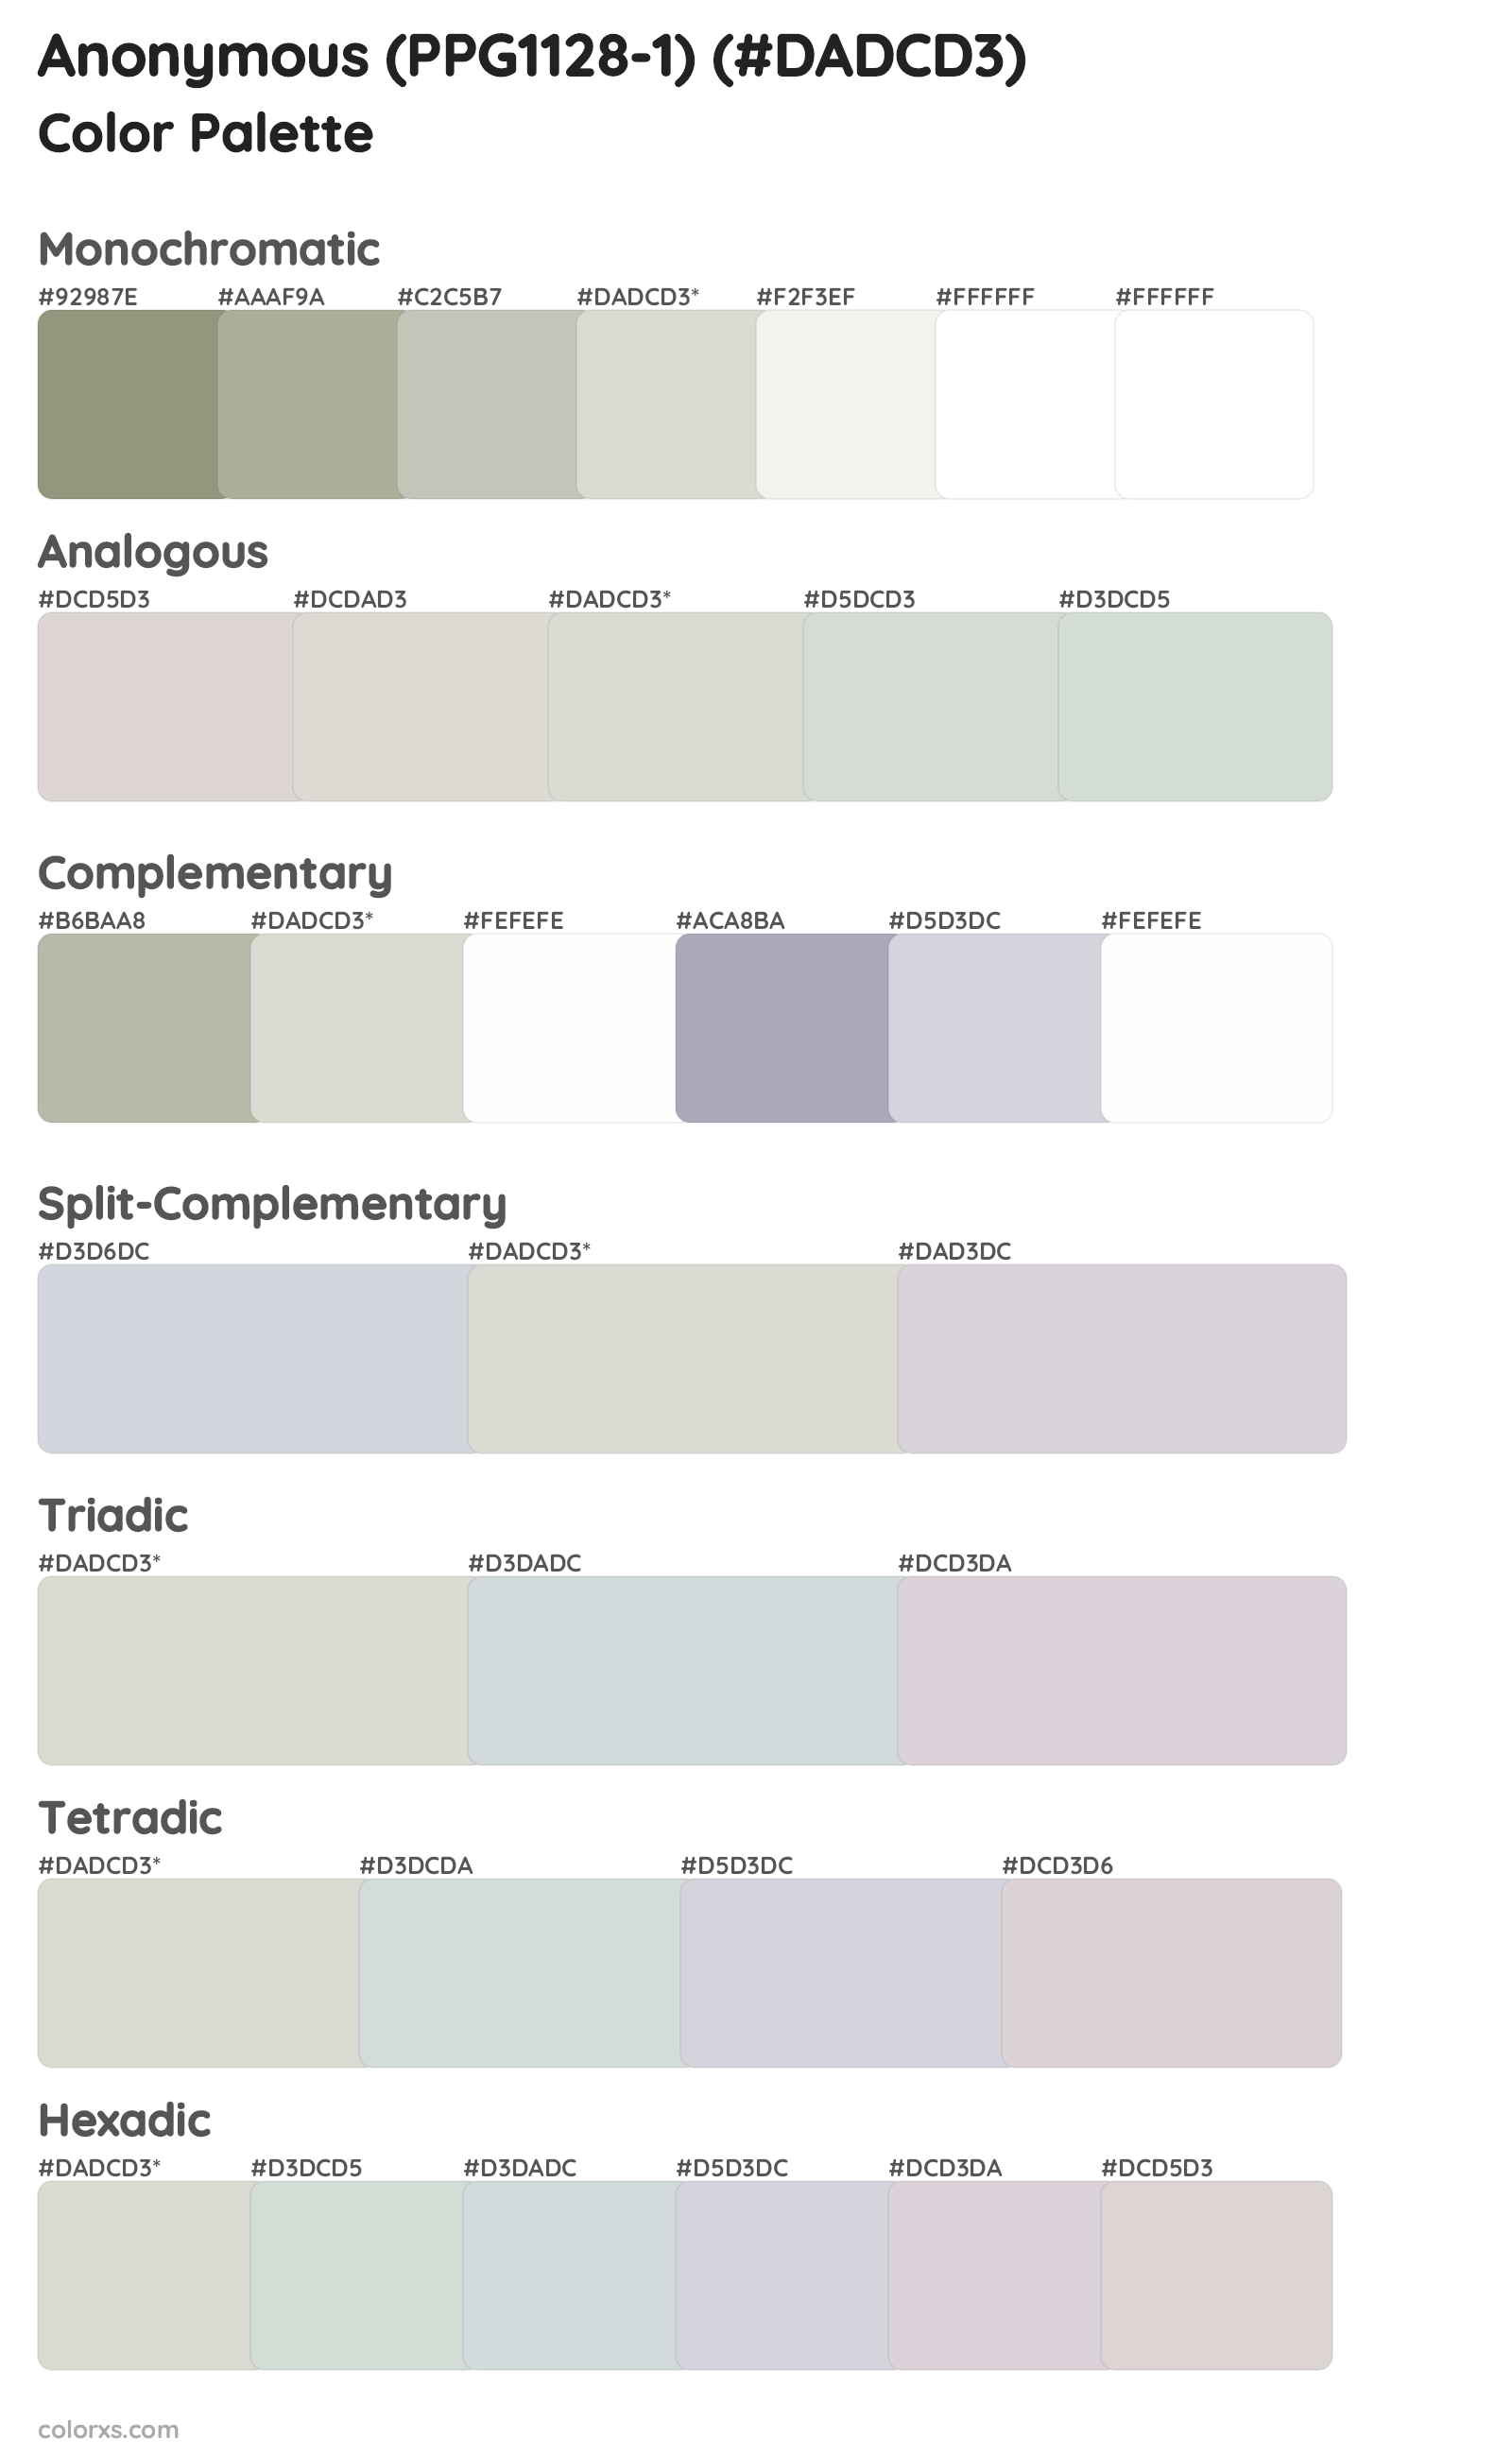 Anonymous (PPG1128-1) Color Scheme Palettes